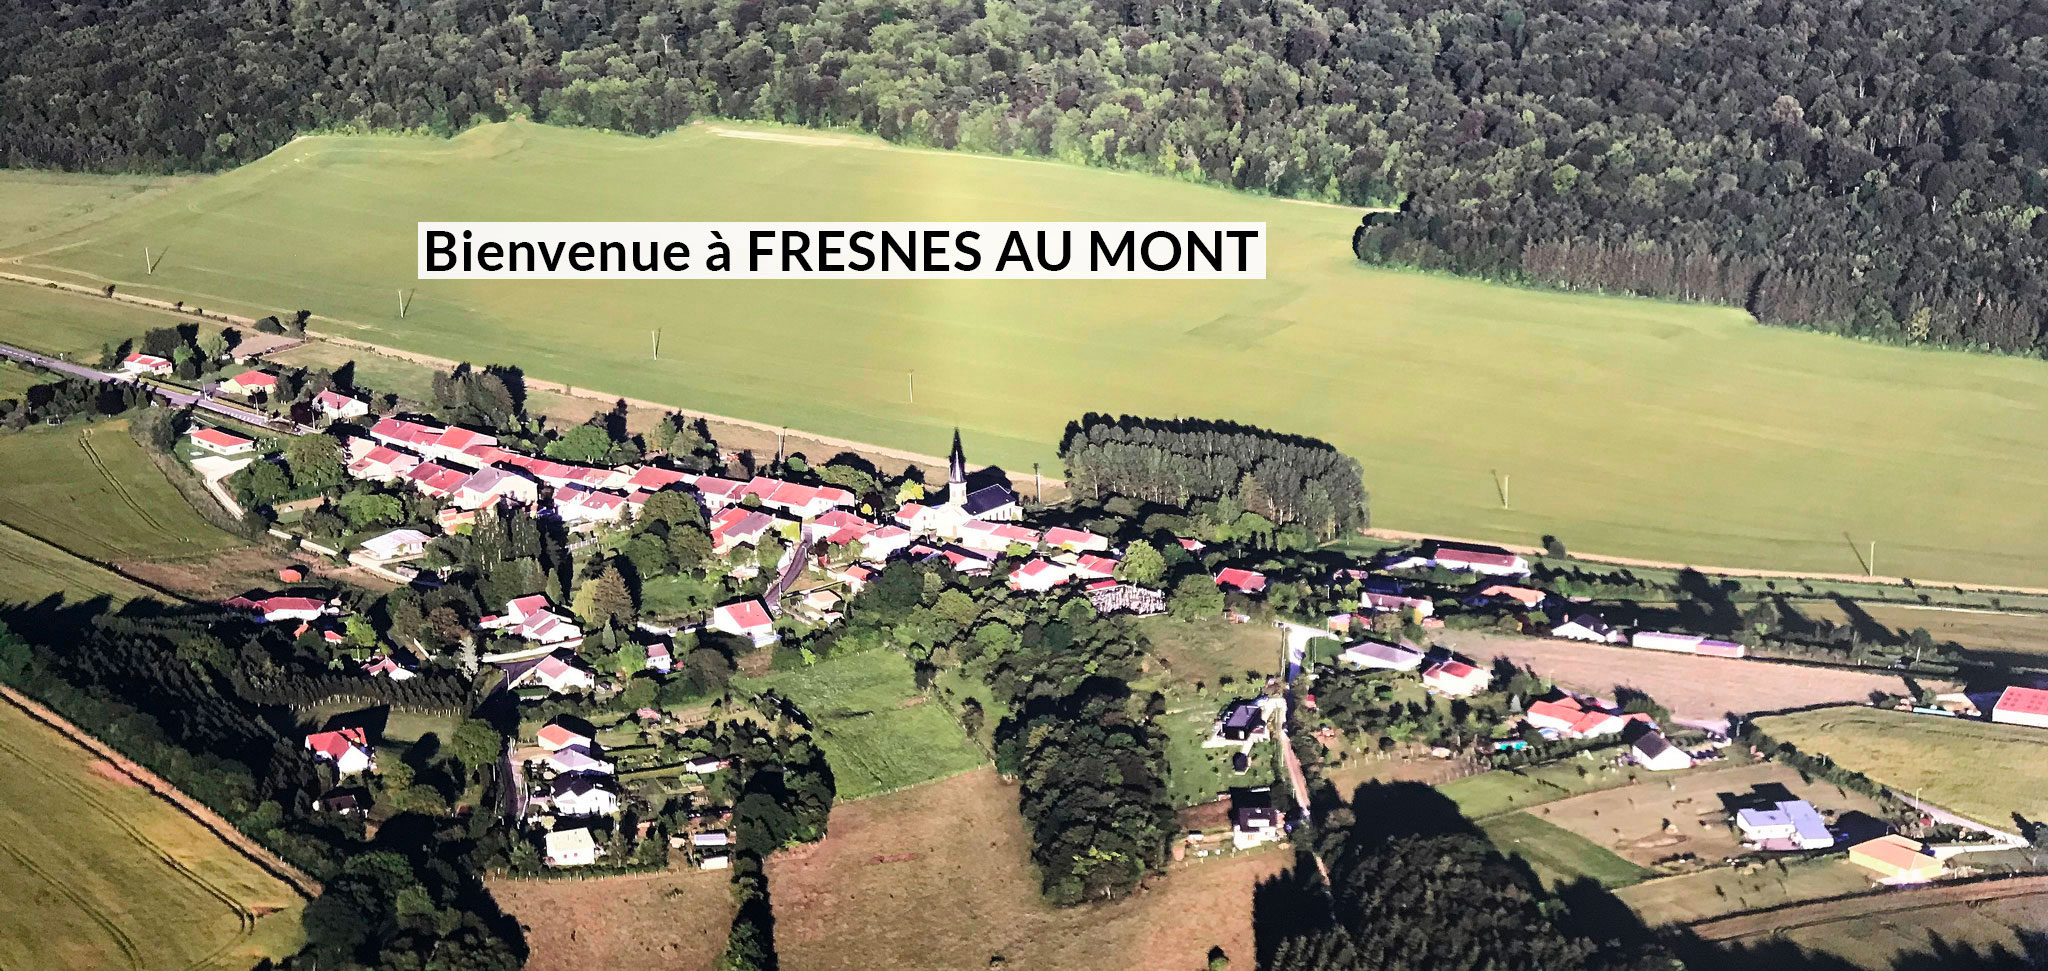 Bienvenue à Fresnes au Mont. Photo vue du ciel, prise par drône. ©Laurent Giraud